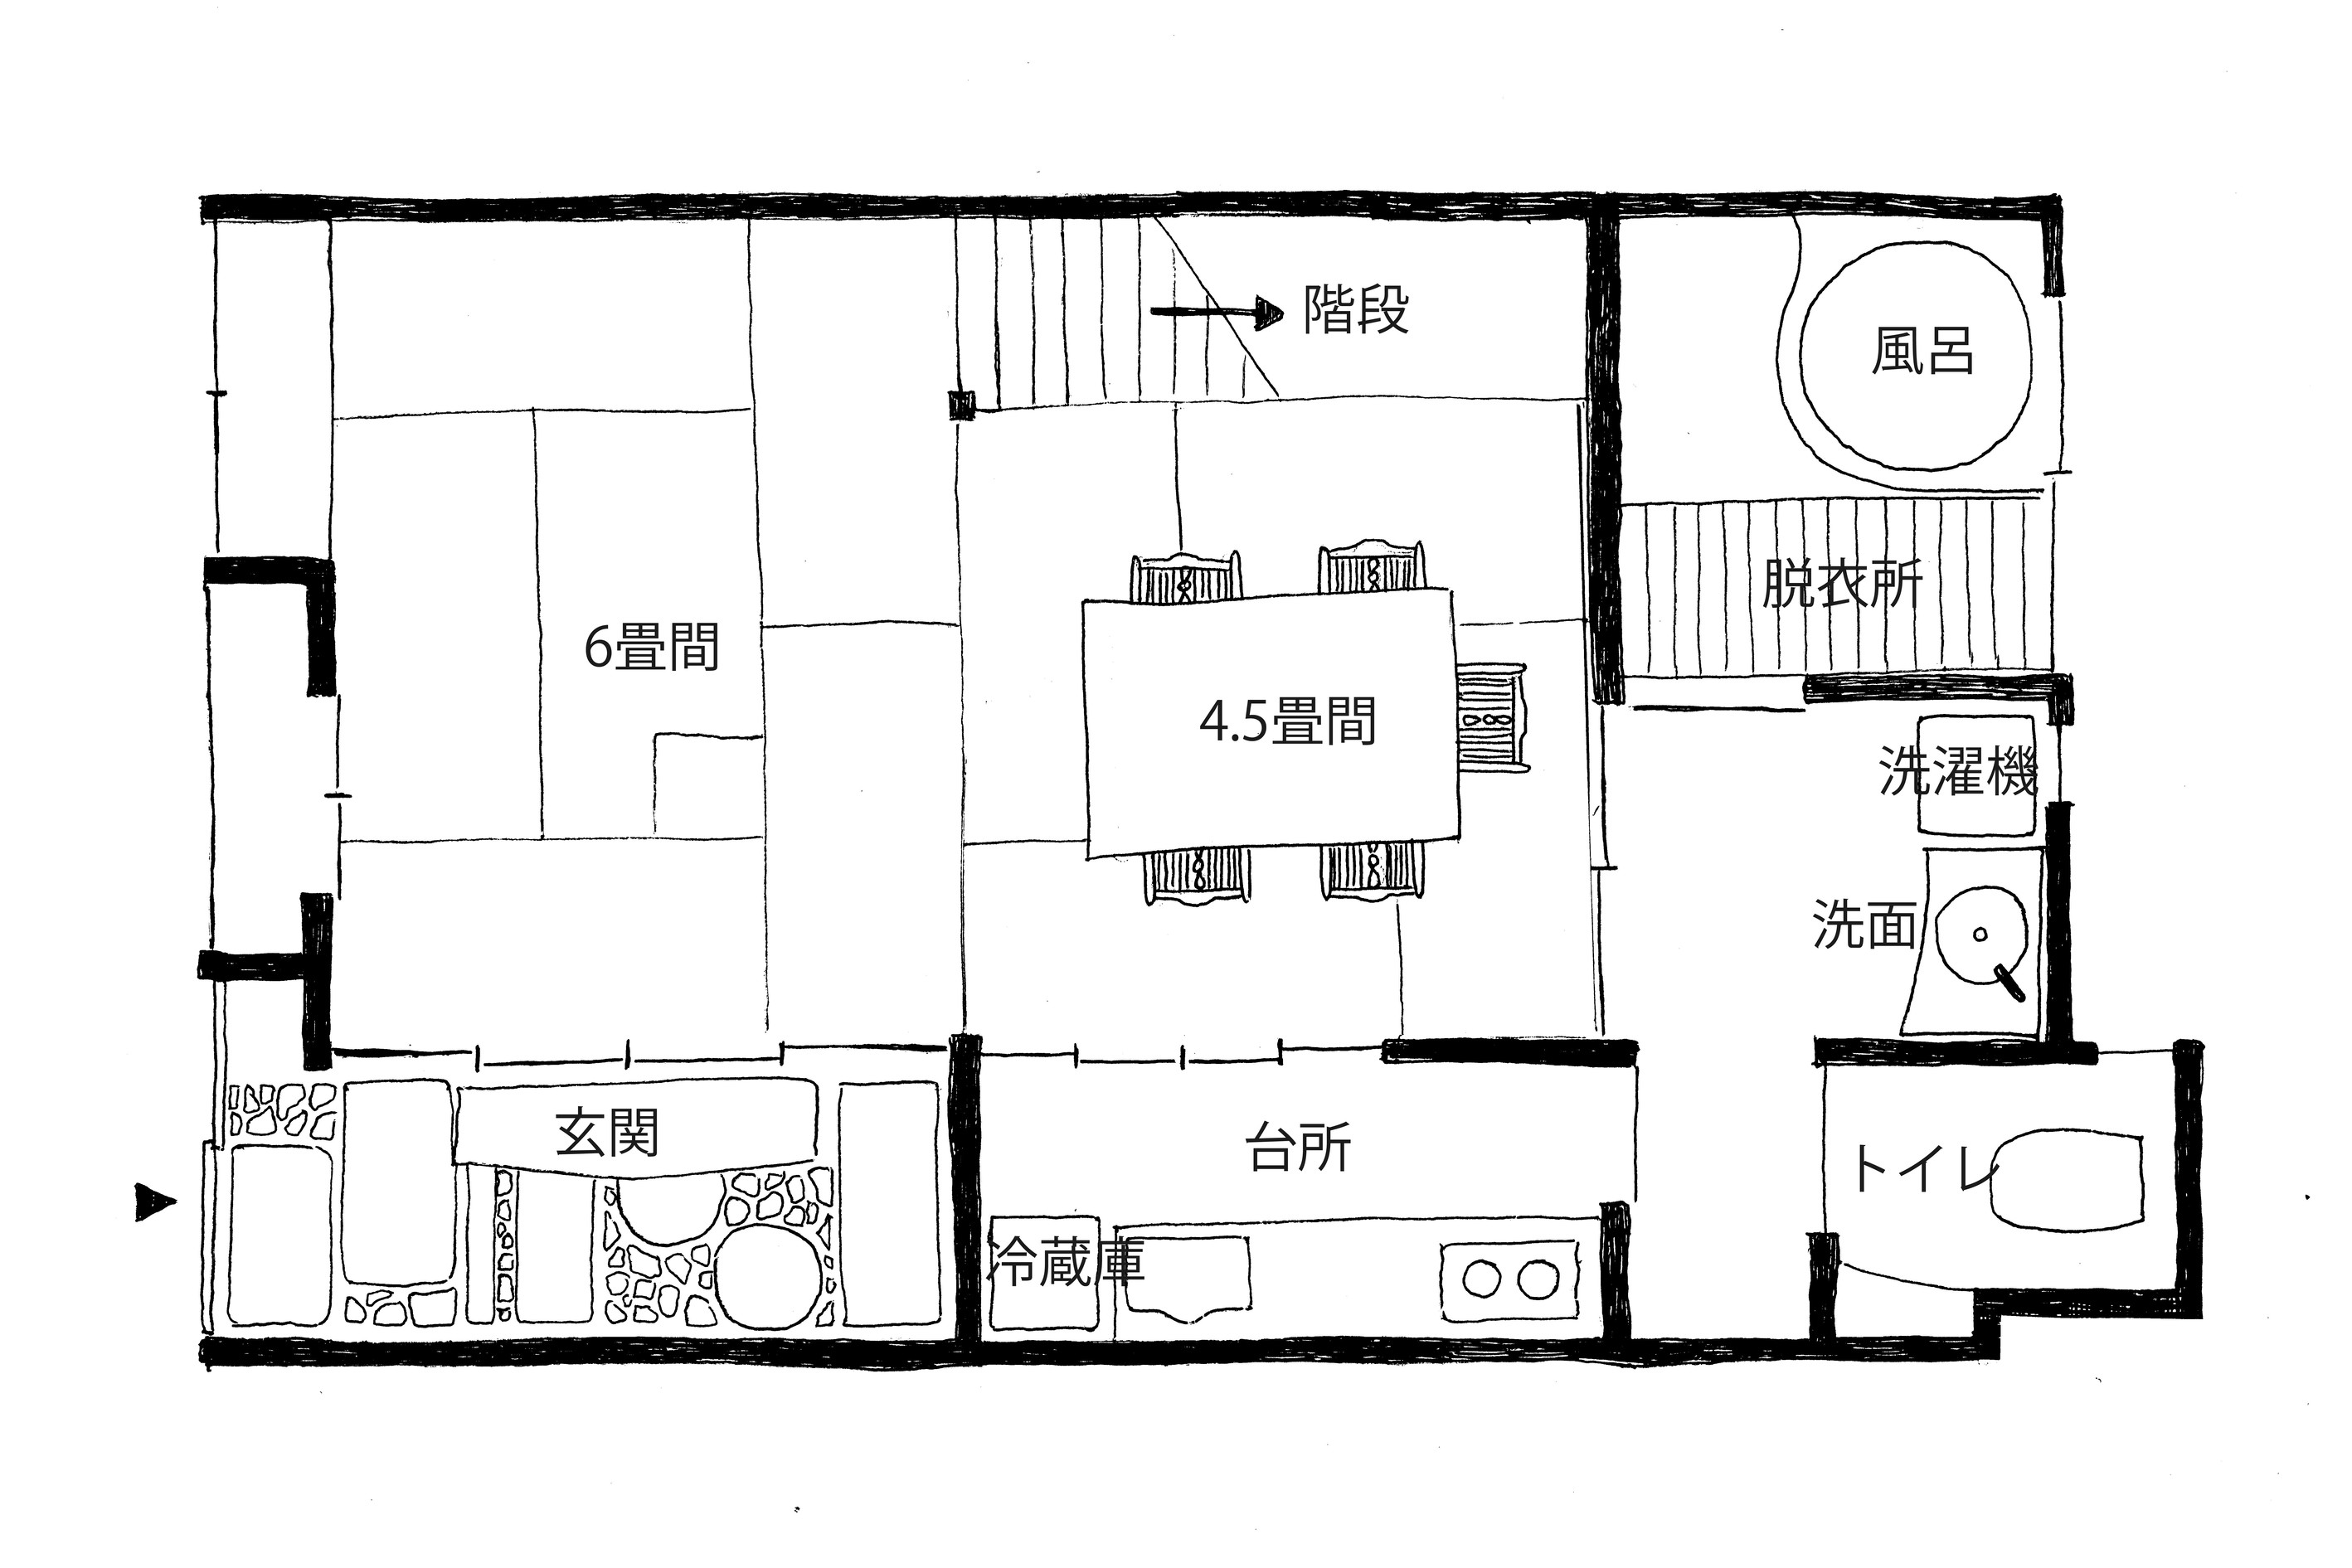 【1階】1階には10.5帖の居間、台所、トイレ、お風呂がございます。1階にて就寝頂くことも可能です